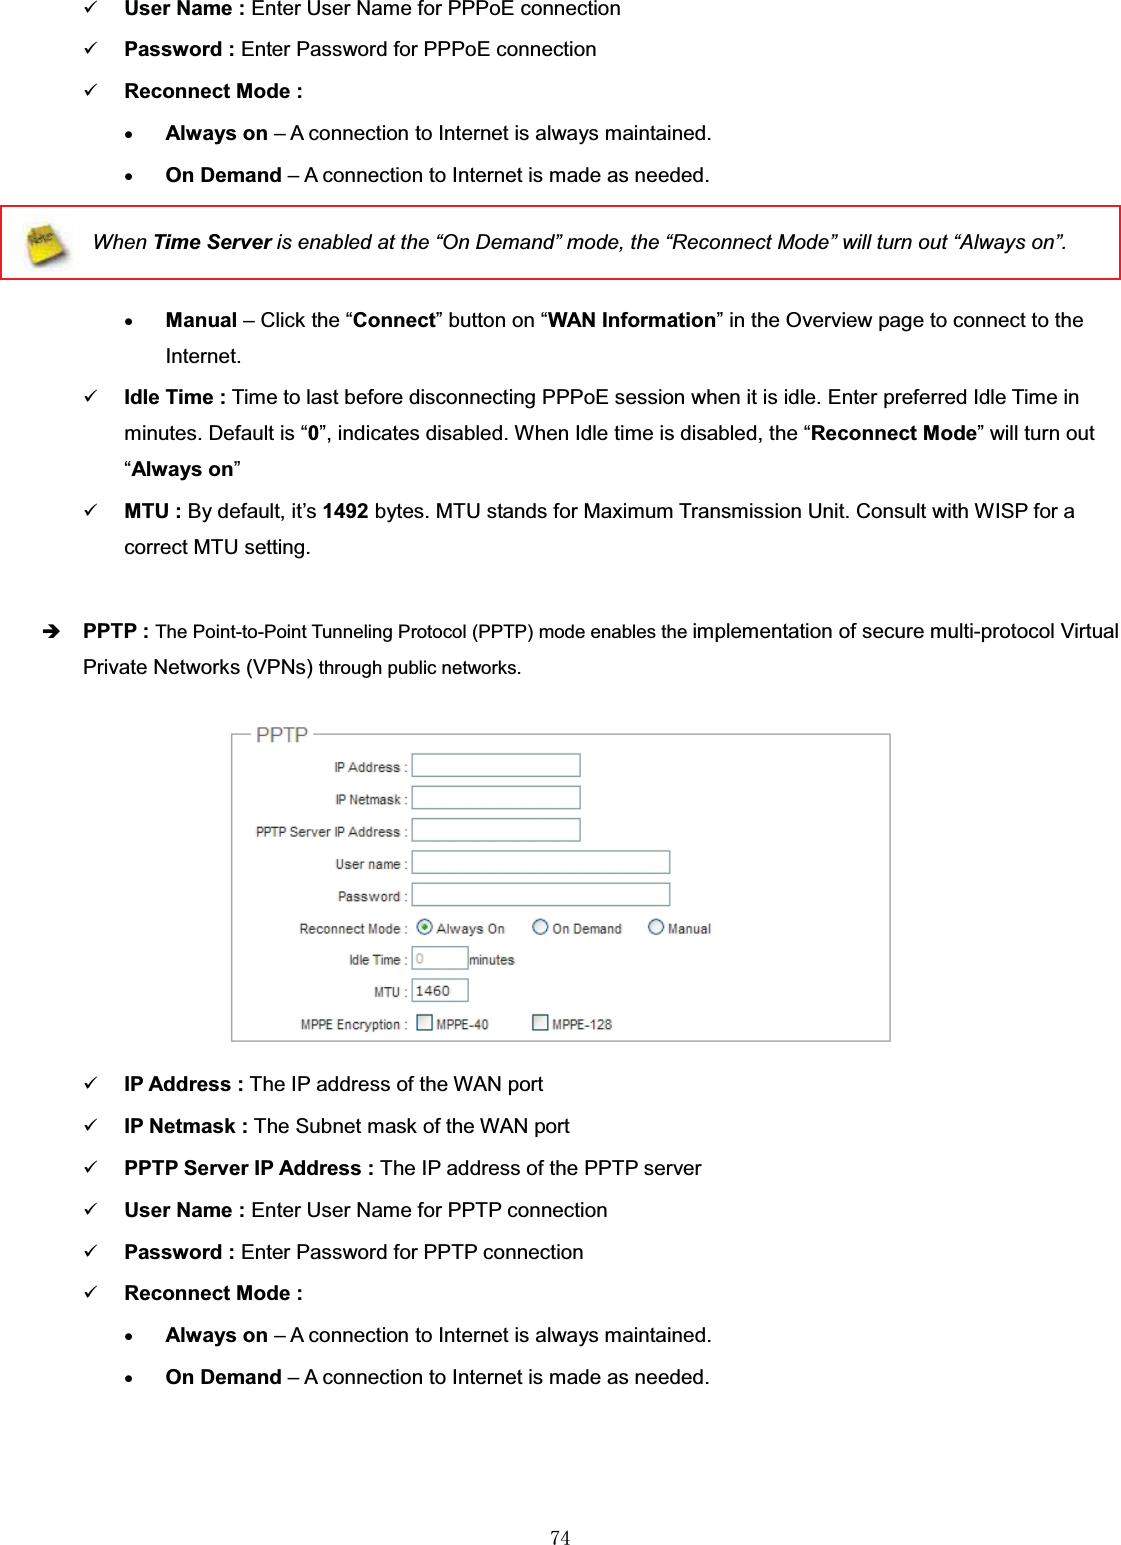 㻣㻠9User Name : Enter User Name for PPPoE connection9Password : Enter Password for PPPoE connection9Reconnect Mode :xAlways on – A connection to Internet is always maintained.xOn Demand – A connection to Internet is made as needed.When Time Server is enabled at the “On Demand” mode, the “Reconnect Mode” will turn out “Always on”.xManual – Click the “Connect” button on “WAN Information” in the Overview page to connect to the Internet.9Idle Time : Time to last before disconnecting PPPoE session when it is idle. Enter preferred Idle Time in minutes. Default is “0”, indicates disabled. When Idle time is disabled, the “Reconnect Mode” will turn out “Always on”9MTU : By default, it’s 1492 bytes. MTU stands for Maximum Transmission Unit. Consult with WISP for a correct MTU setting.ÎPPTP : The Point-to-Point Tunneling Protocol (PPTP) mode enables the implementation of secure multi-protocol Virtual Private Networks (VPNs) through public networks.9IP Address : The IP address of the WAN port9IP Netmask : The Subnet mask of the WAN port9PPTP Server IP Address : The IP address of the PPTP server9User Name : Enter User Name for PPTP connection9Password : Enter Password for PPTP connection9Reconnect Mode :xAlways on – A connection to Internet is always maintained.xOn Demand – A connection to Internet is made as needed.